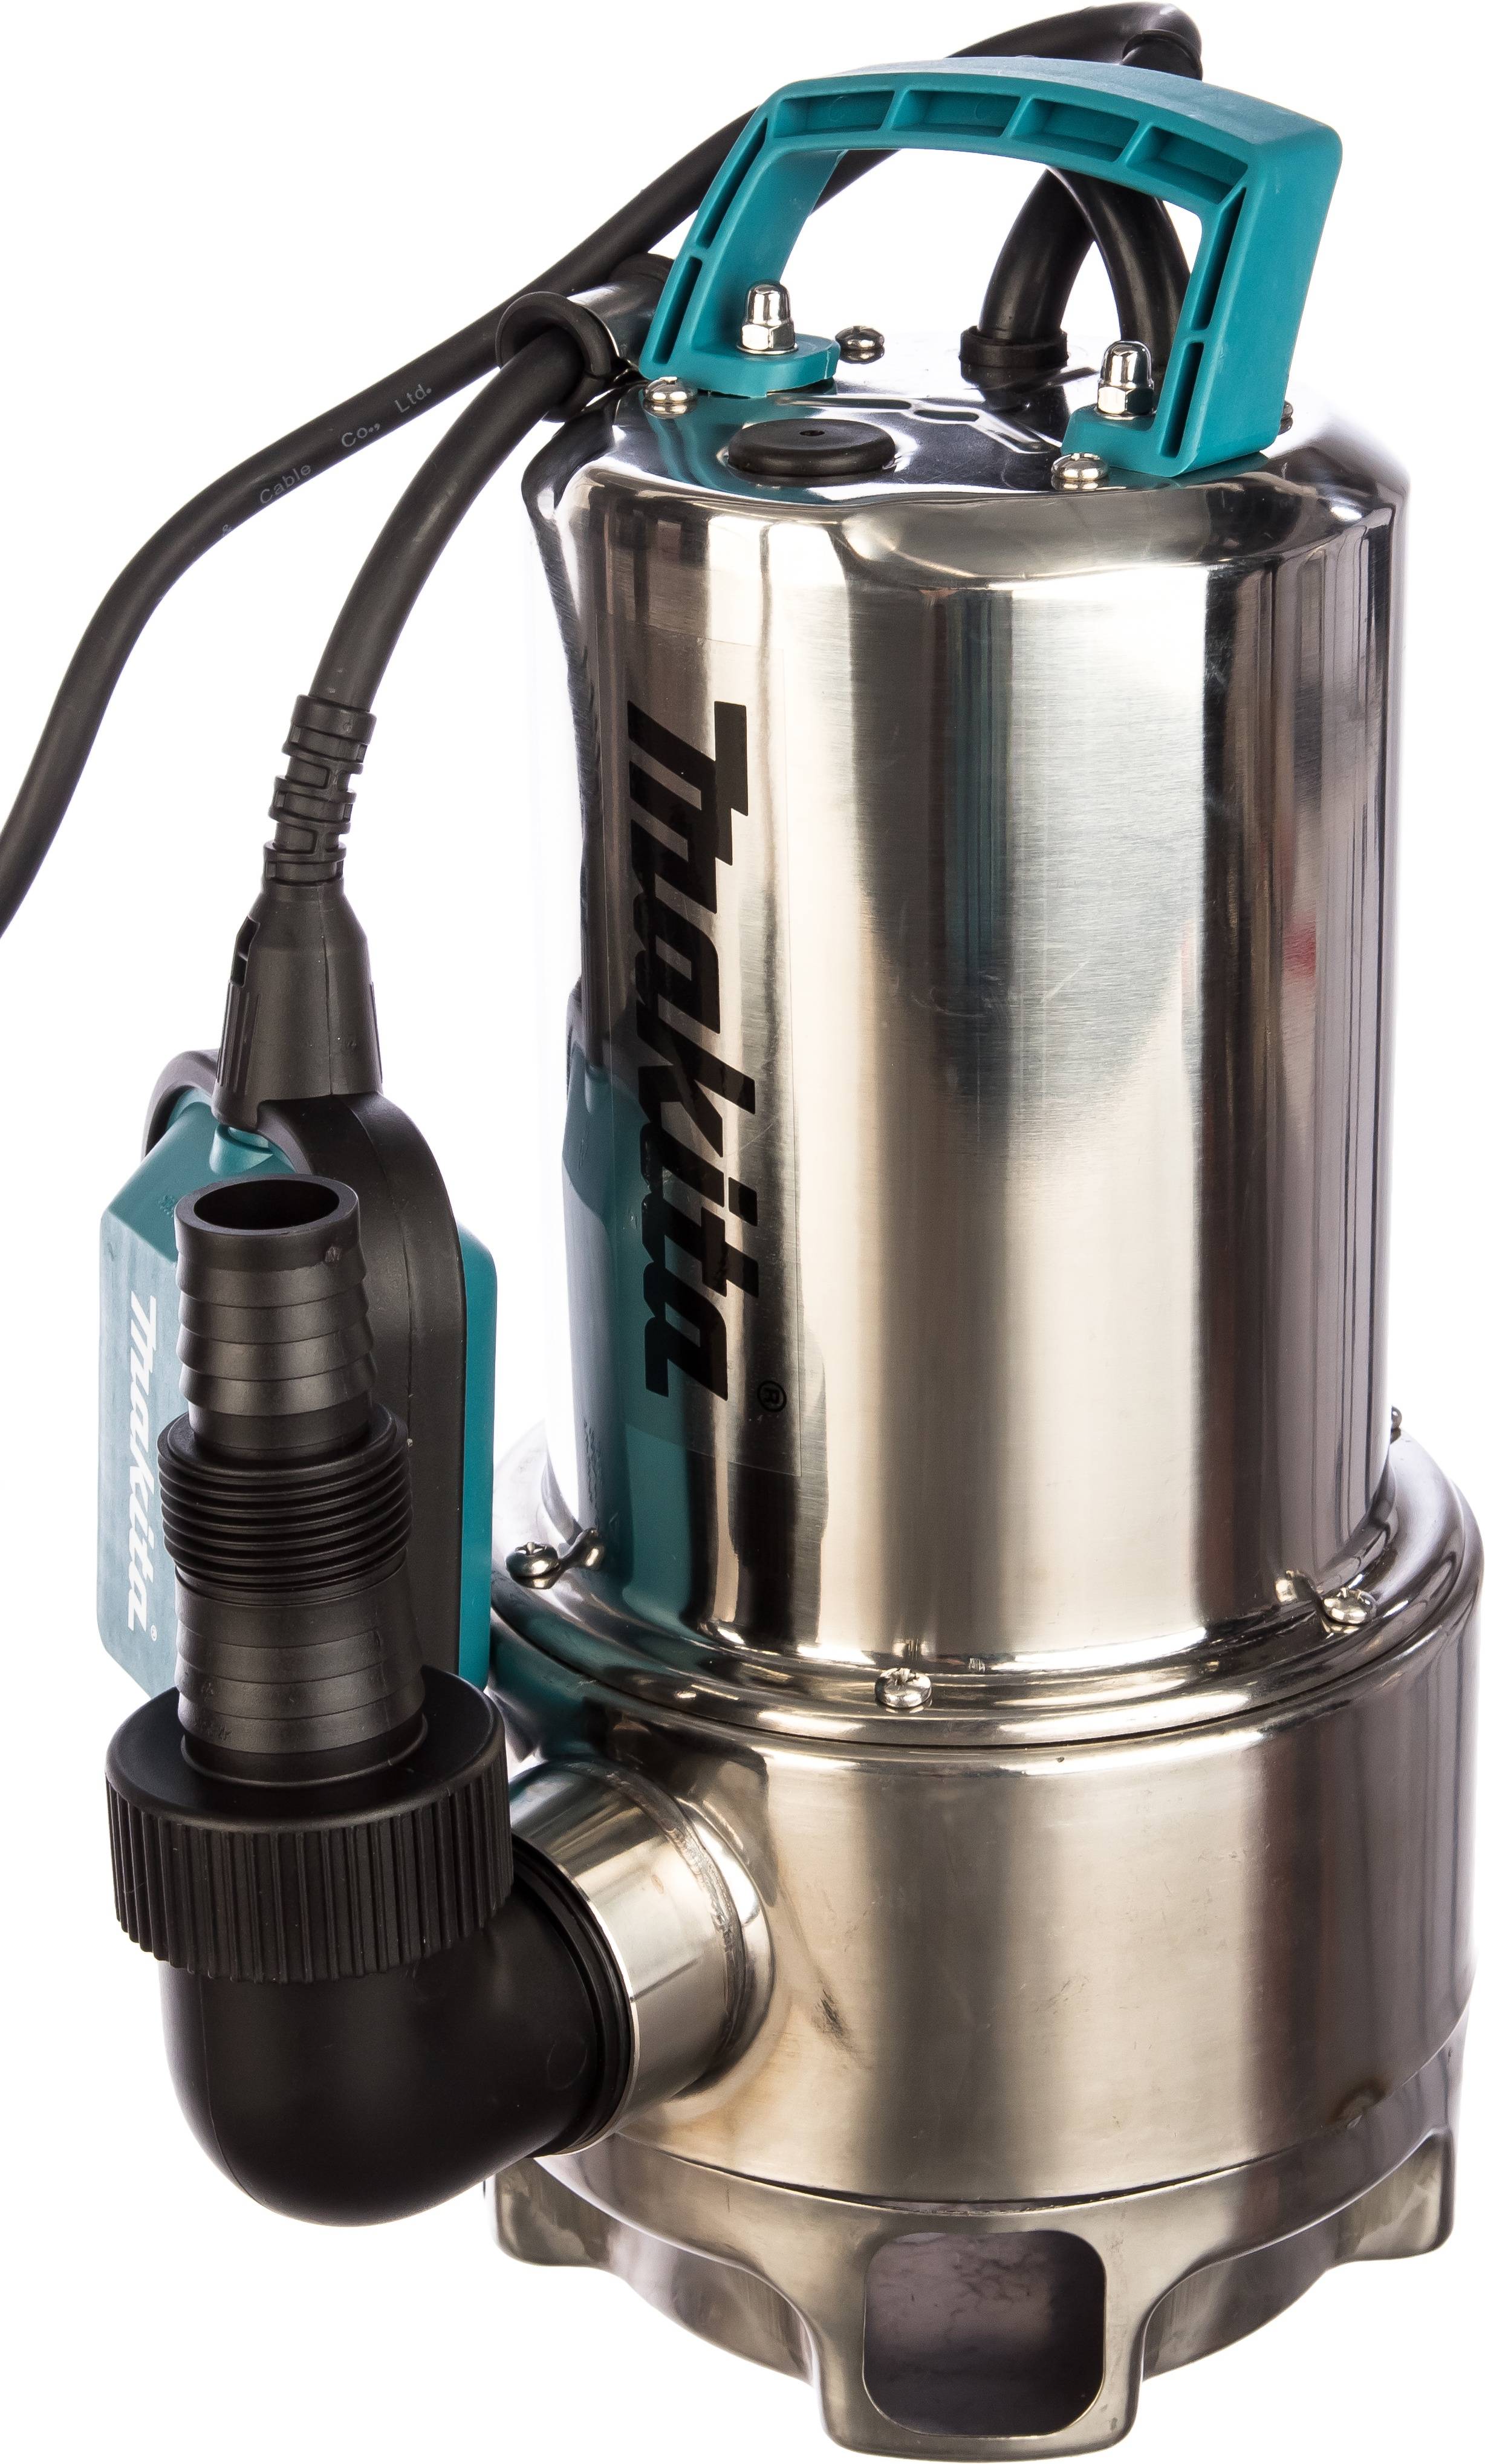 Дренажный насос для грязной воды - устройство, покупка прибора и его применение, рабочие характеристики